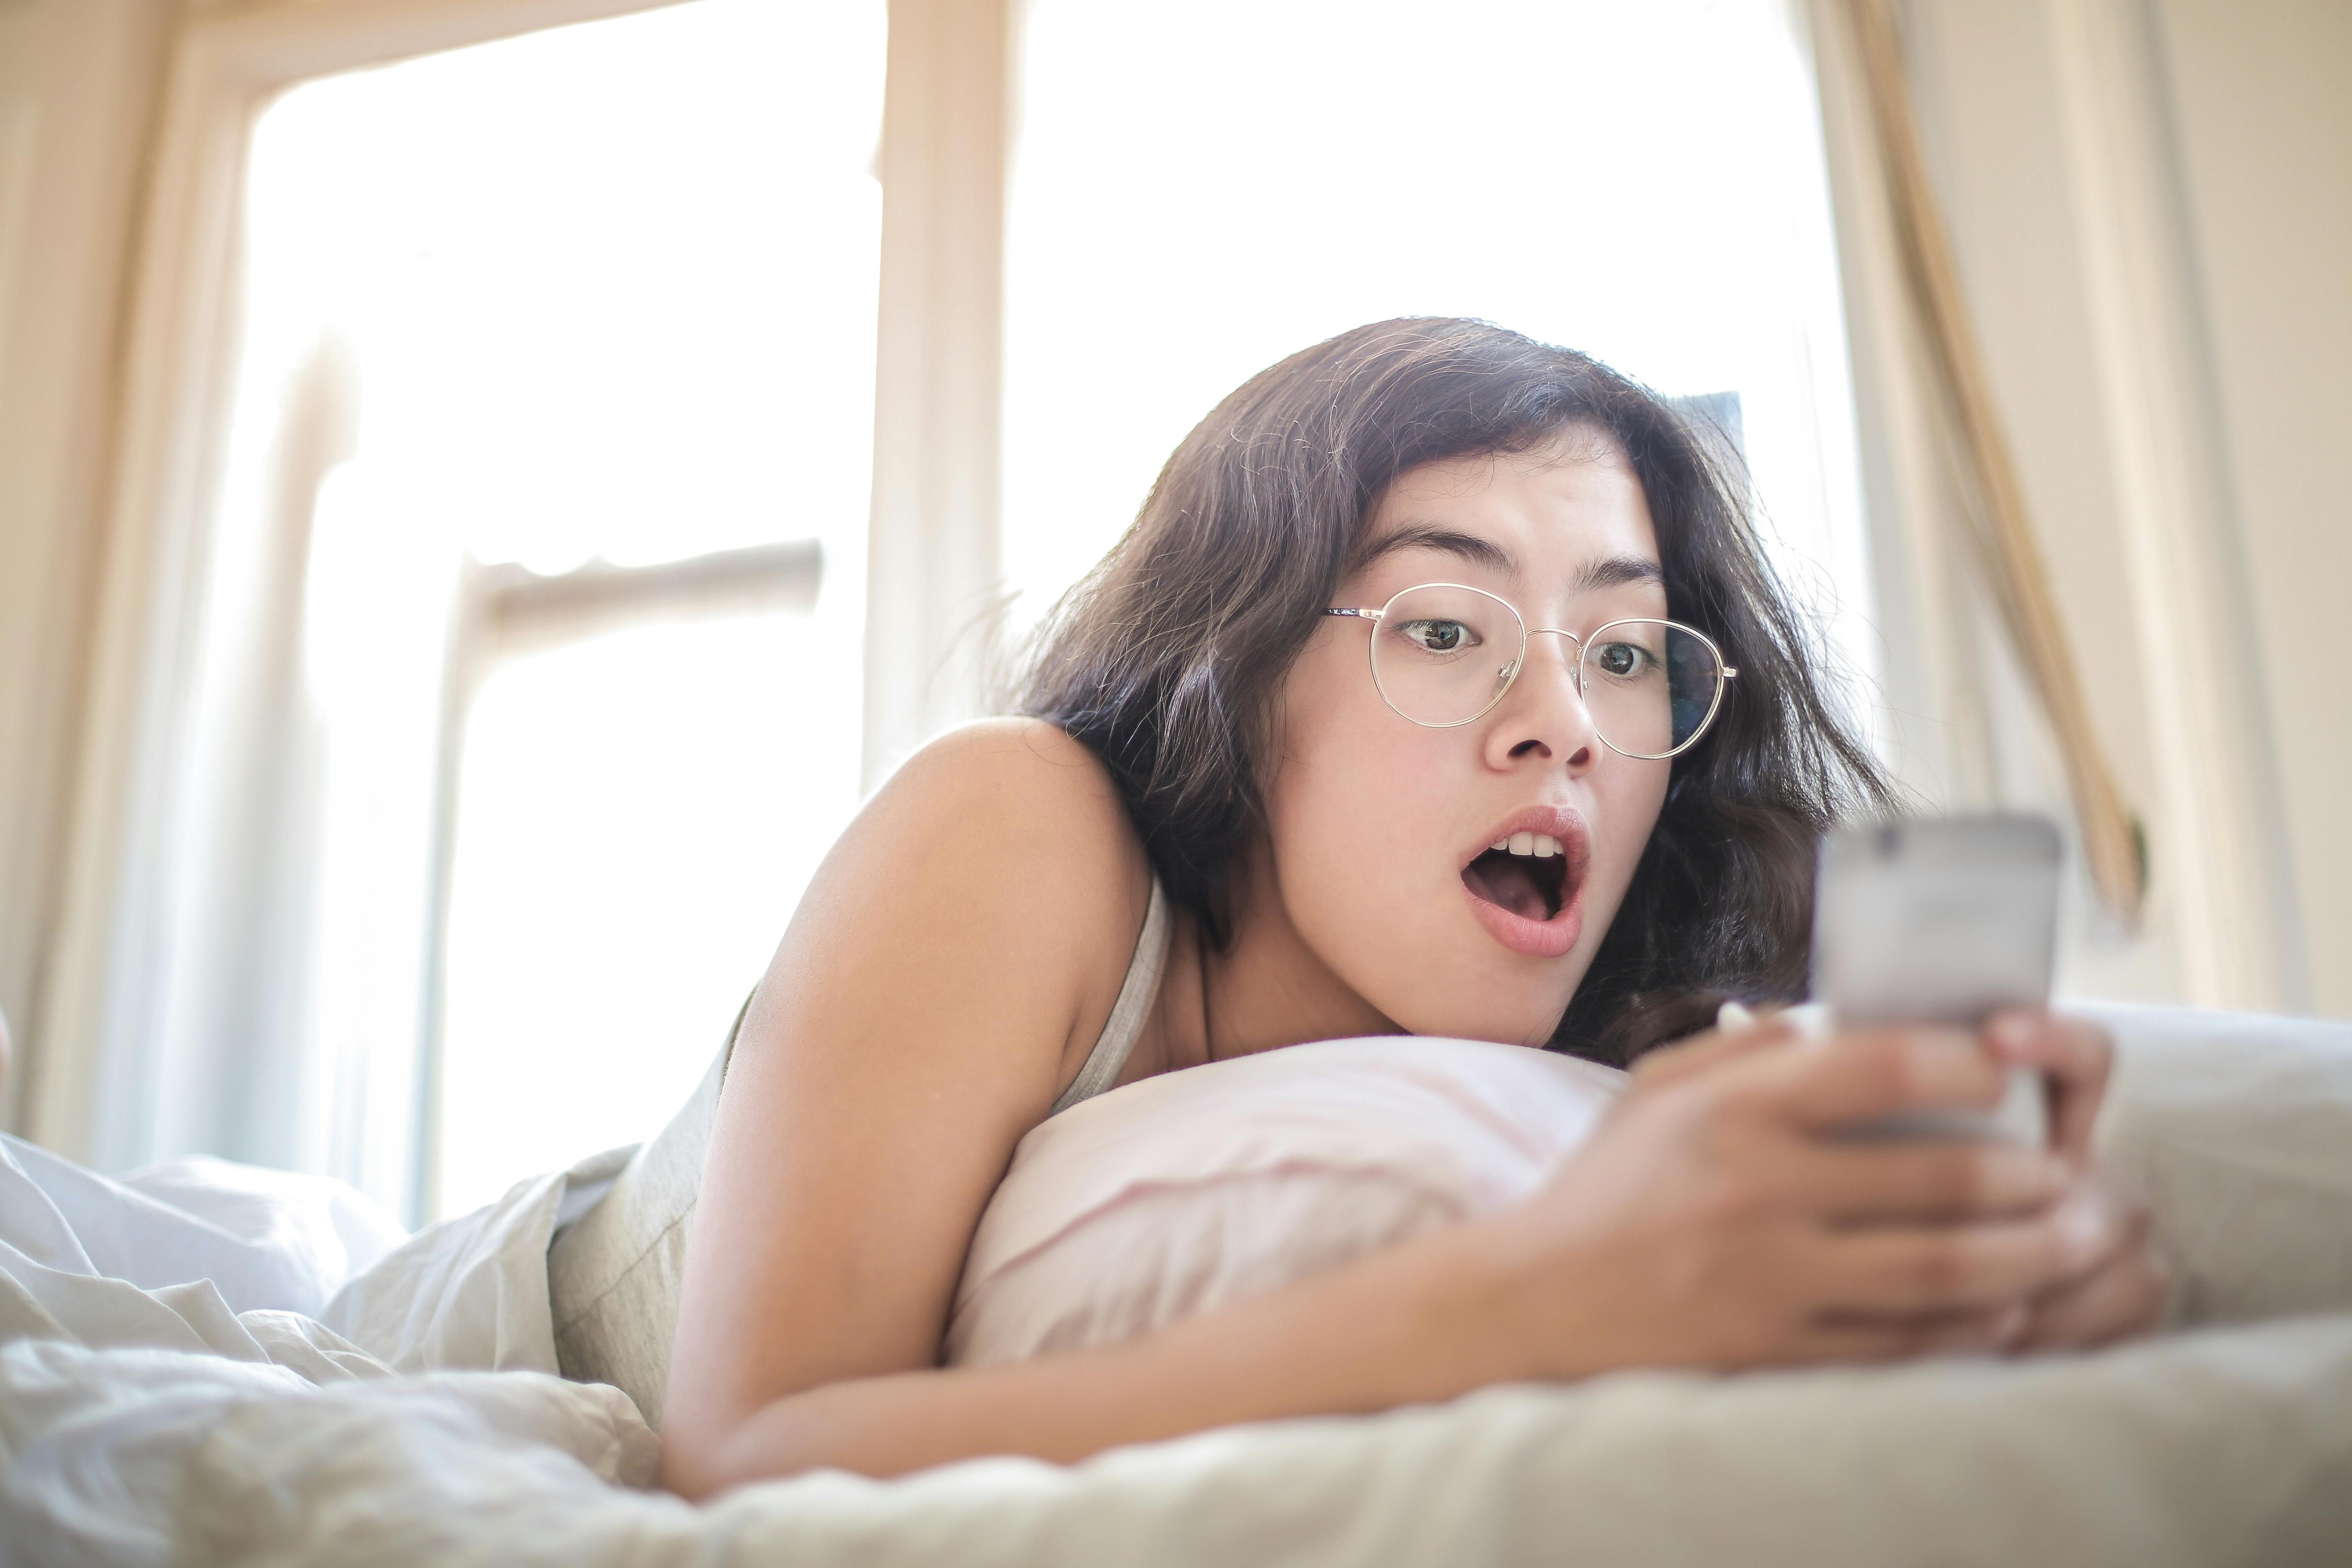 Une femme choquée, allongée sur un lit, tenant et regardant un téléphone | Source : Pexels